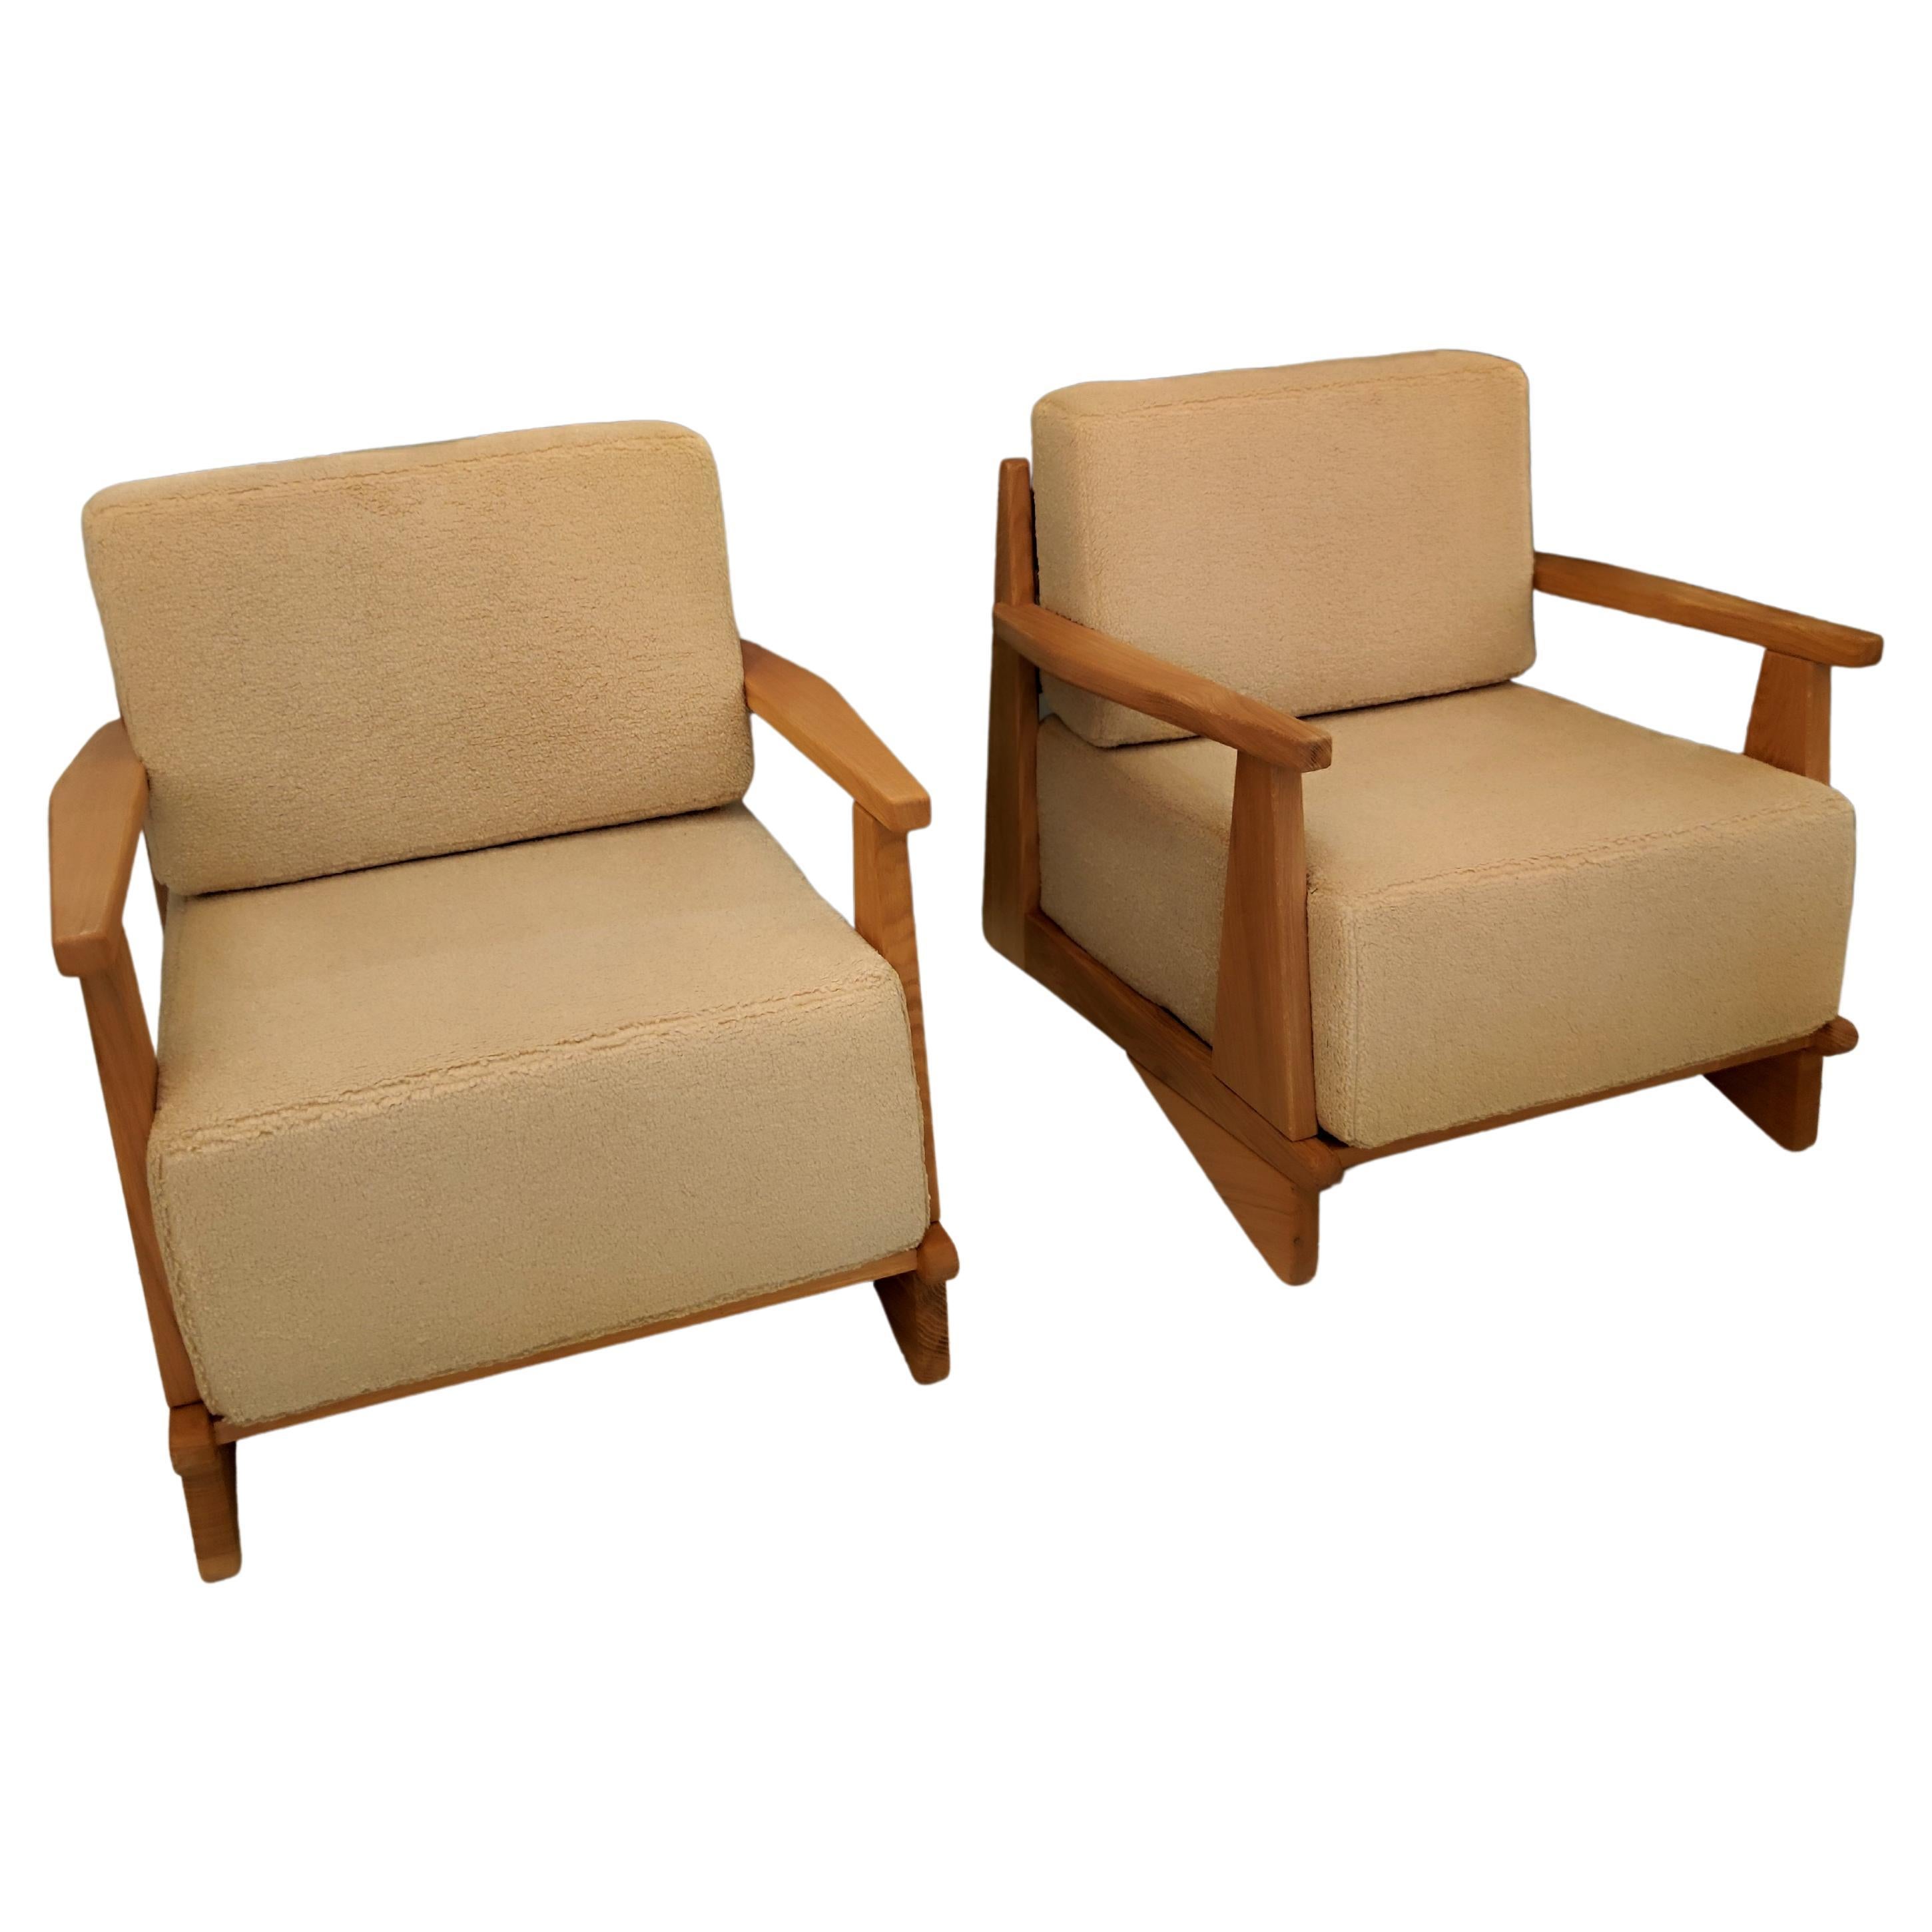 Pair of Massive Oak Wood Armchairs, Attb Maison Regain For Sale